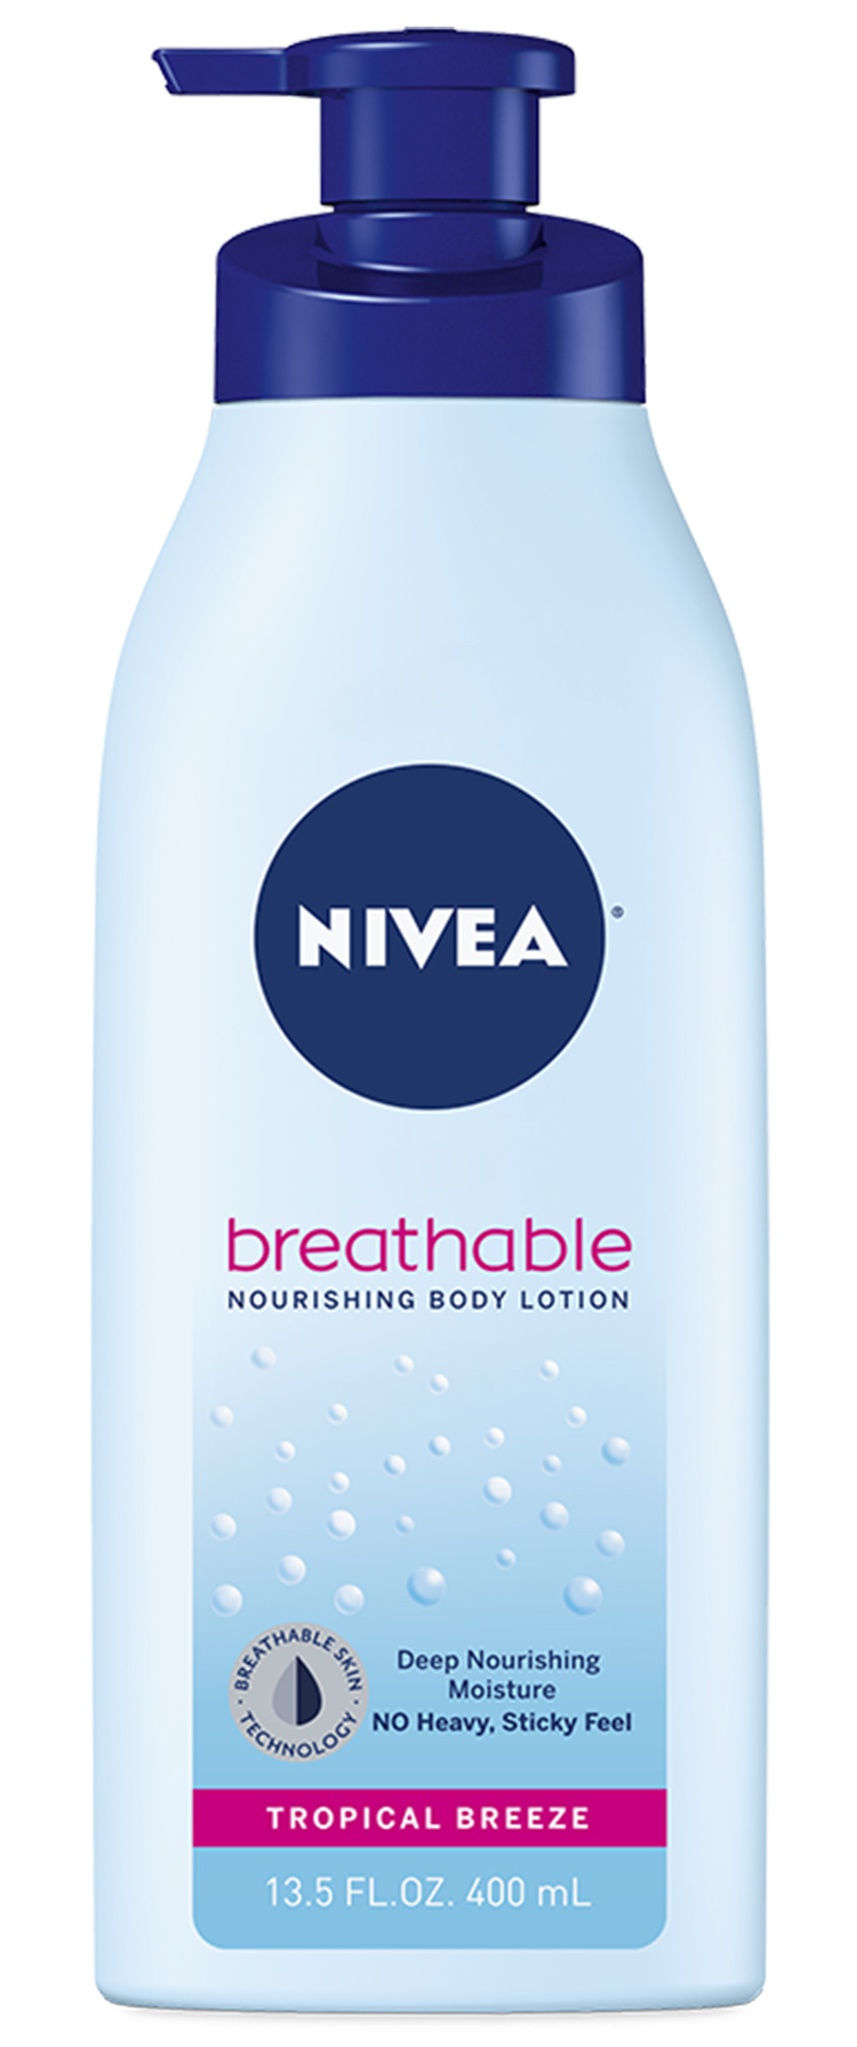 Nivea Breathable Nourishing Body Lotion